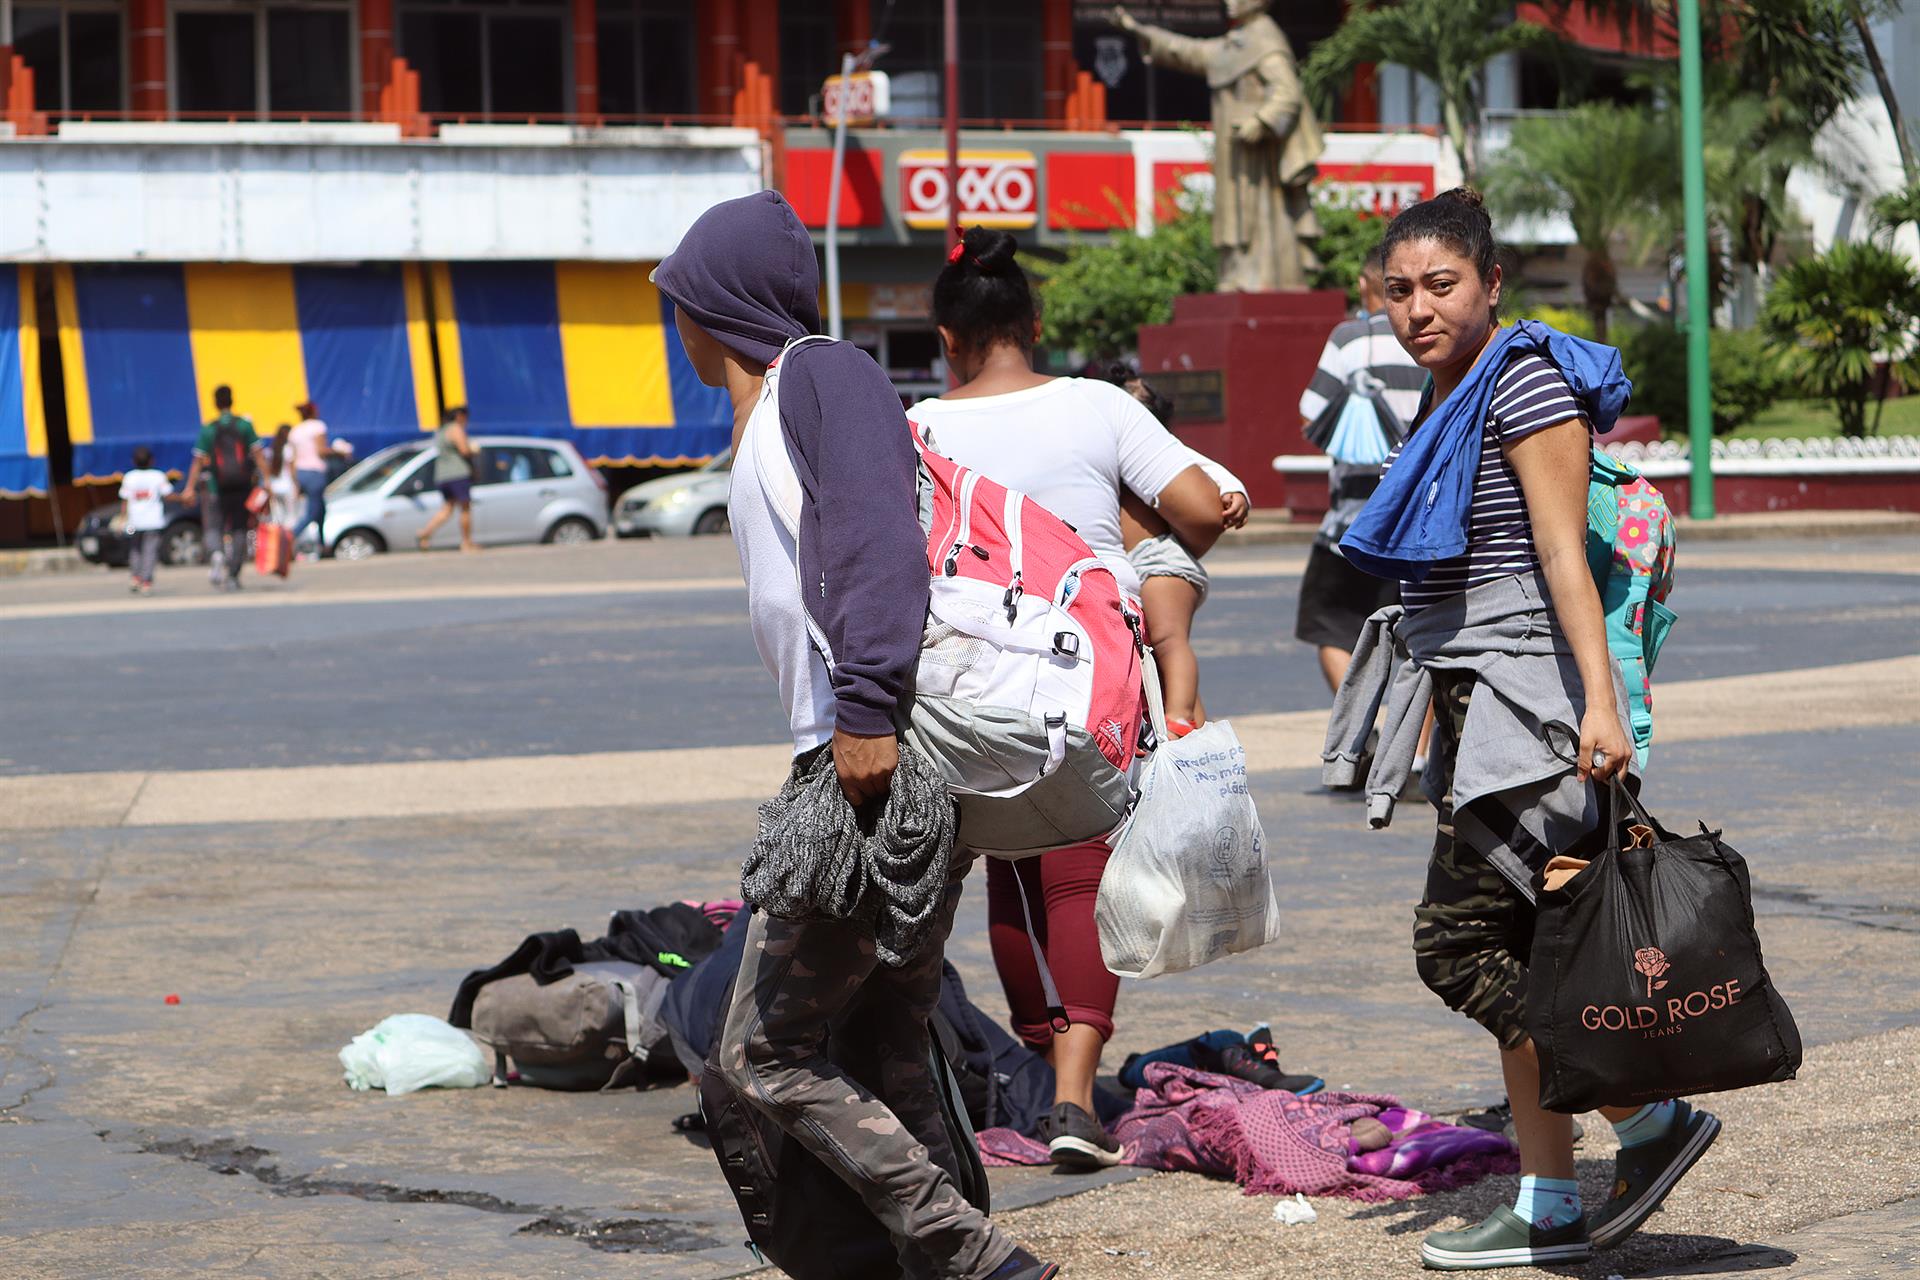 Un grupo de migrantes, en su mayoría de origen centroamericano, se prepara para salir en caravana rumbo a la frontera norte mexicana, hoy, en la ciudad de Tapachula, estado de Chiapas (México). EFE/Juan Manuel Blanco